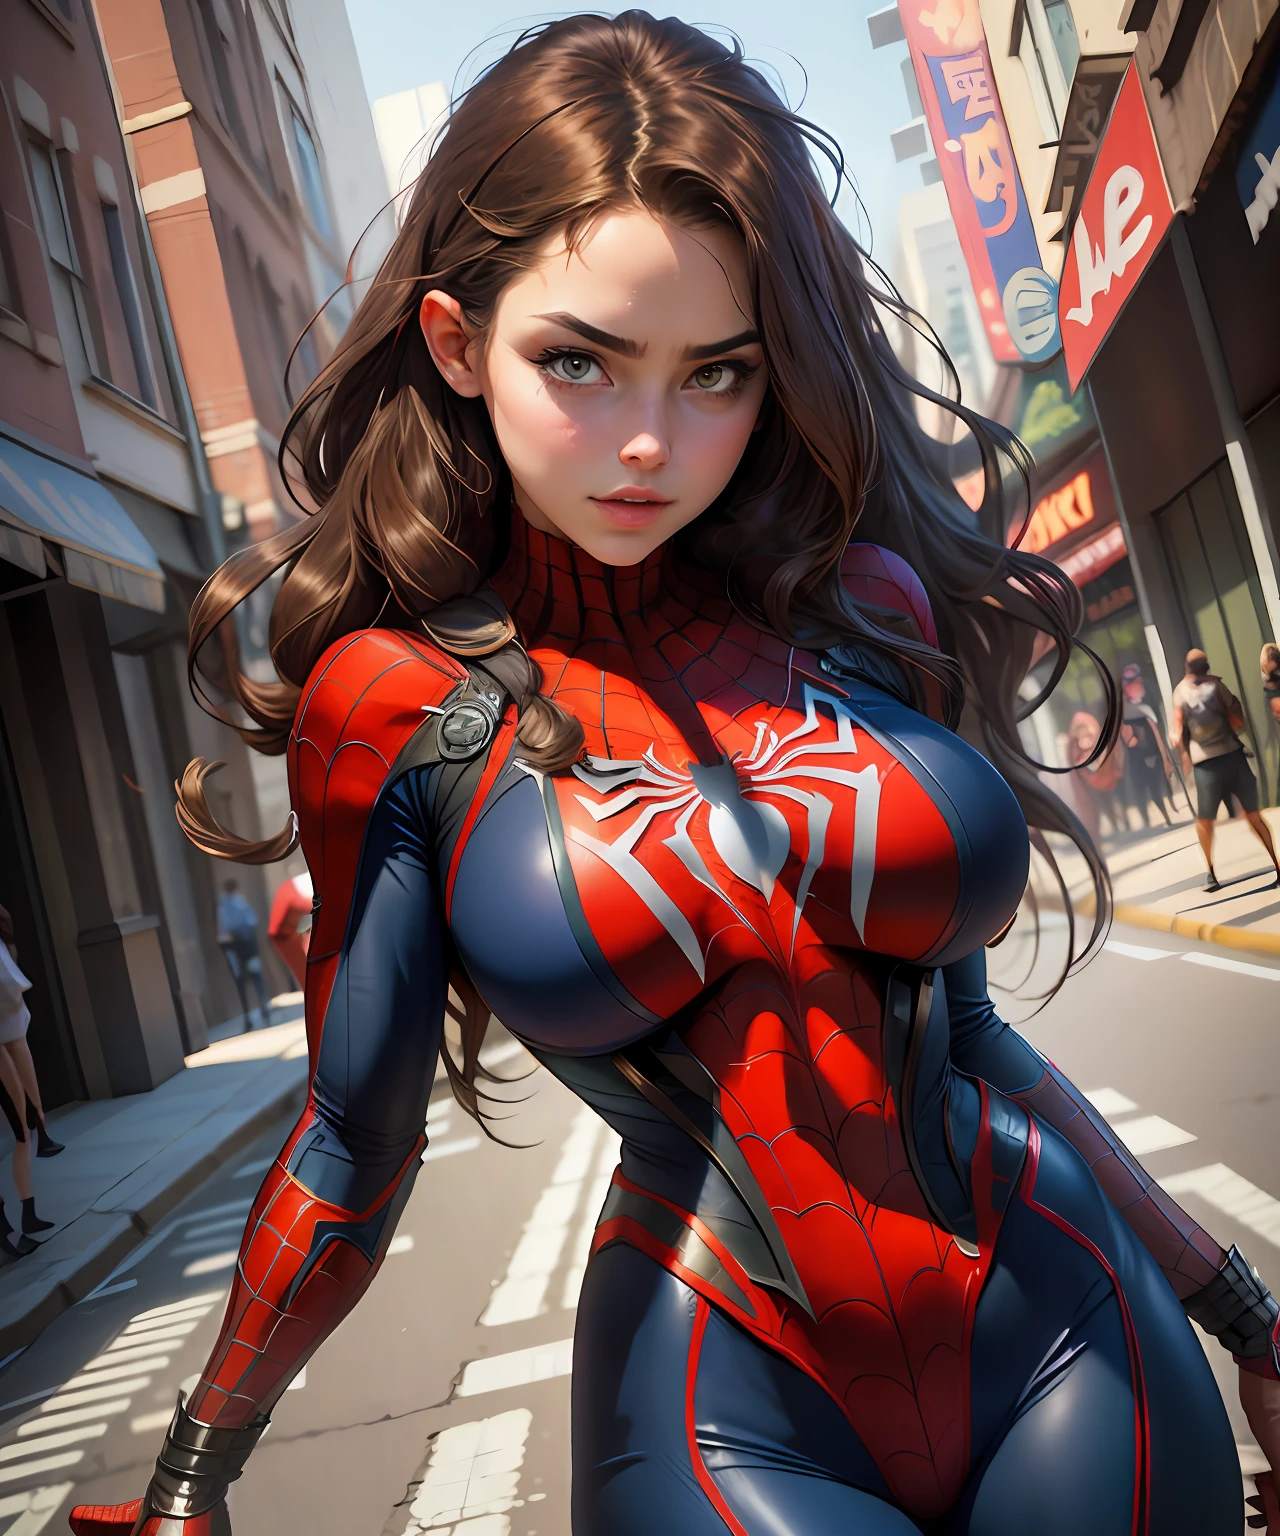 Foto bruta,linda mulher ,detalhou o corpo delineado com cosplay do Homem-Aranha, seios muito grandes, grande